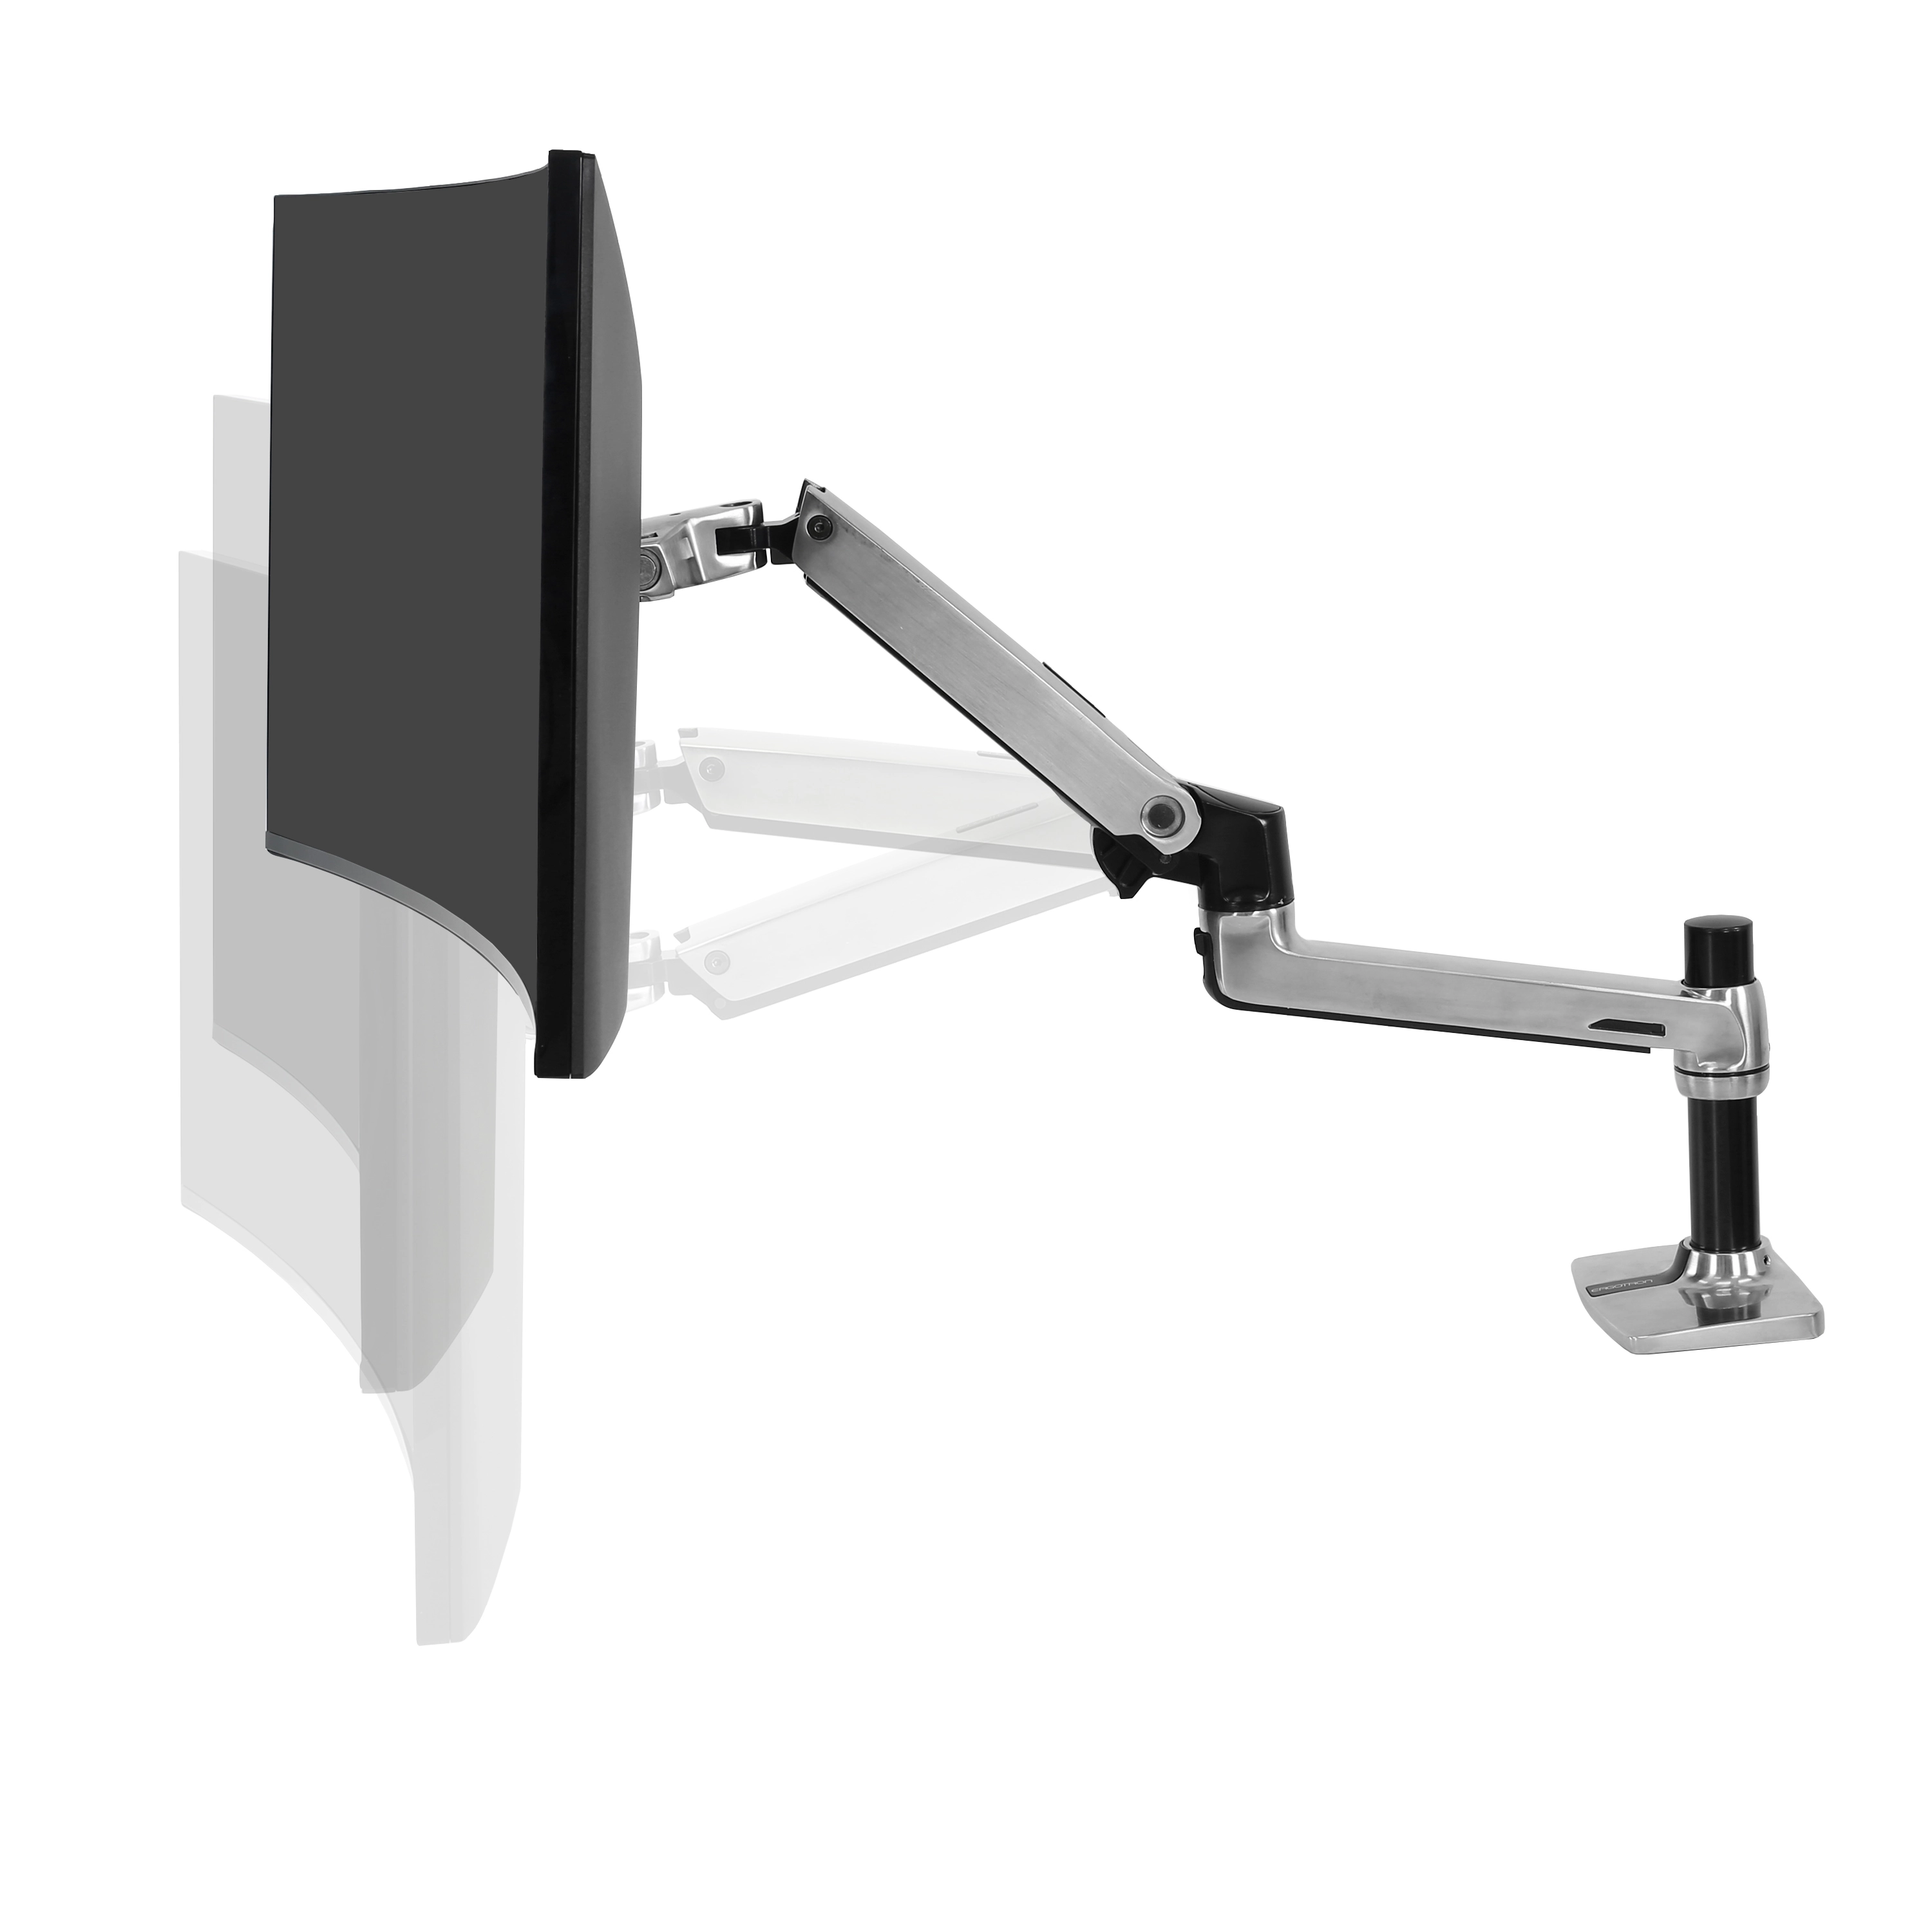 Ergotron LX Desk Mount LCD Arm - Halterung